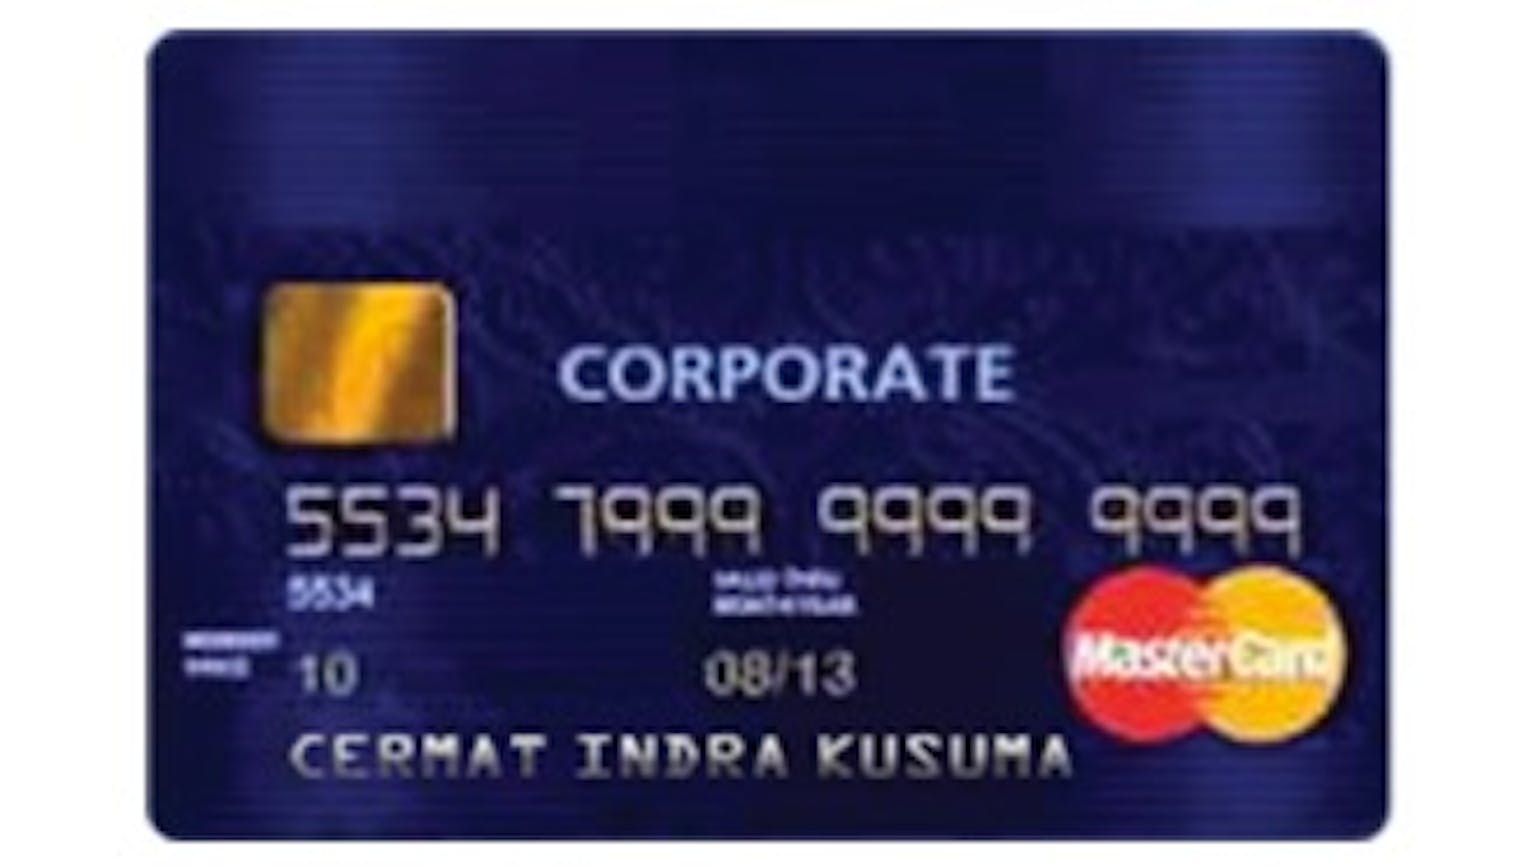 BRI Corporate Card